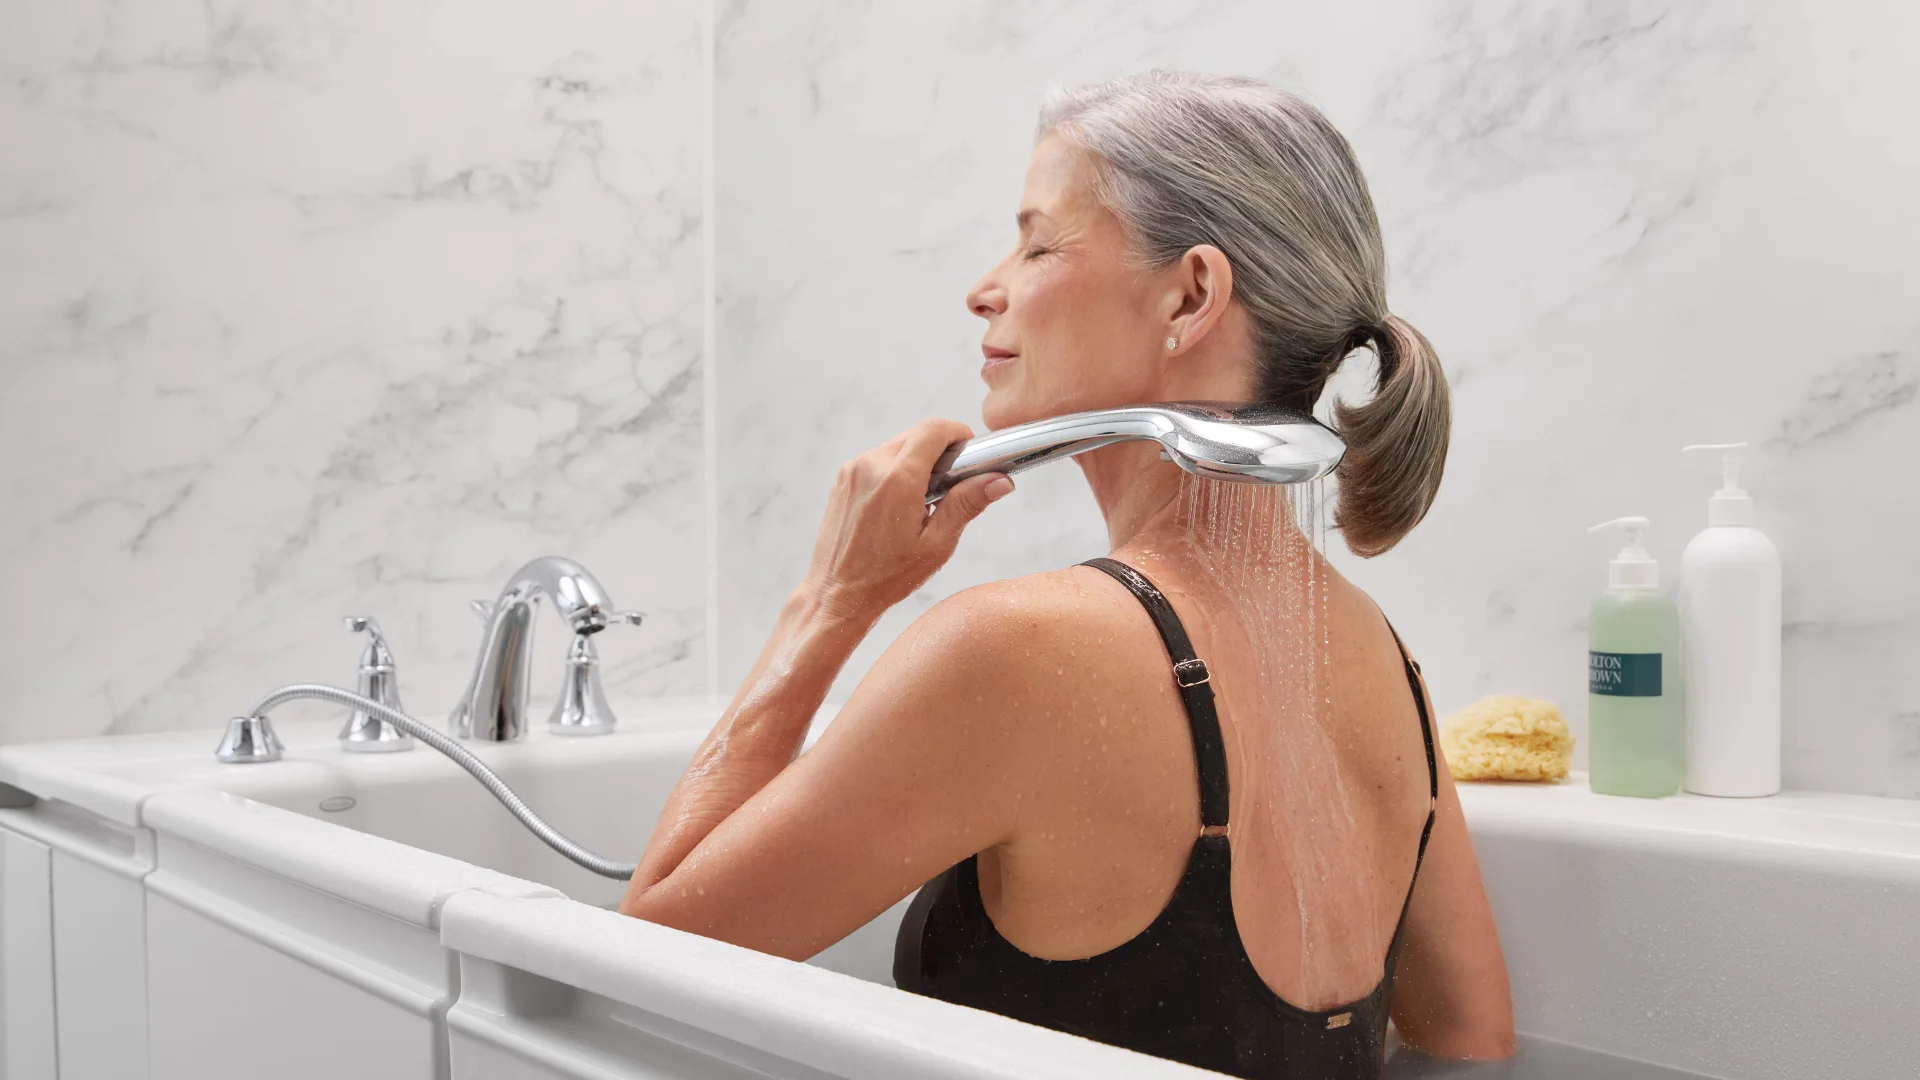 Bathtub & Shower Resurfacing - Get A Grip